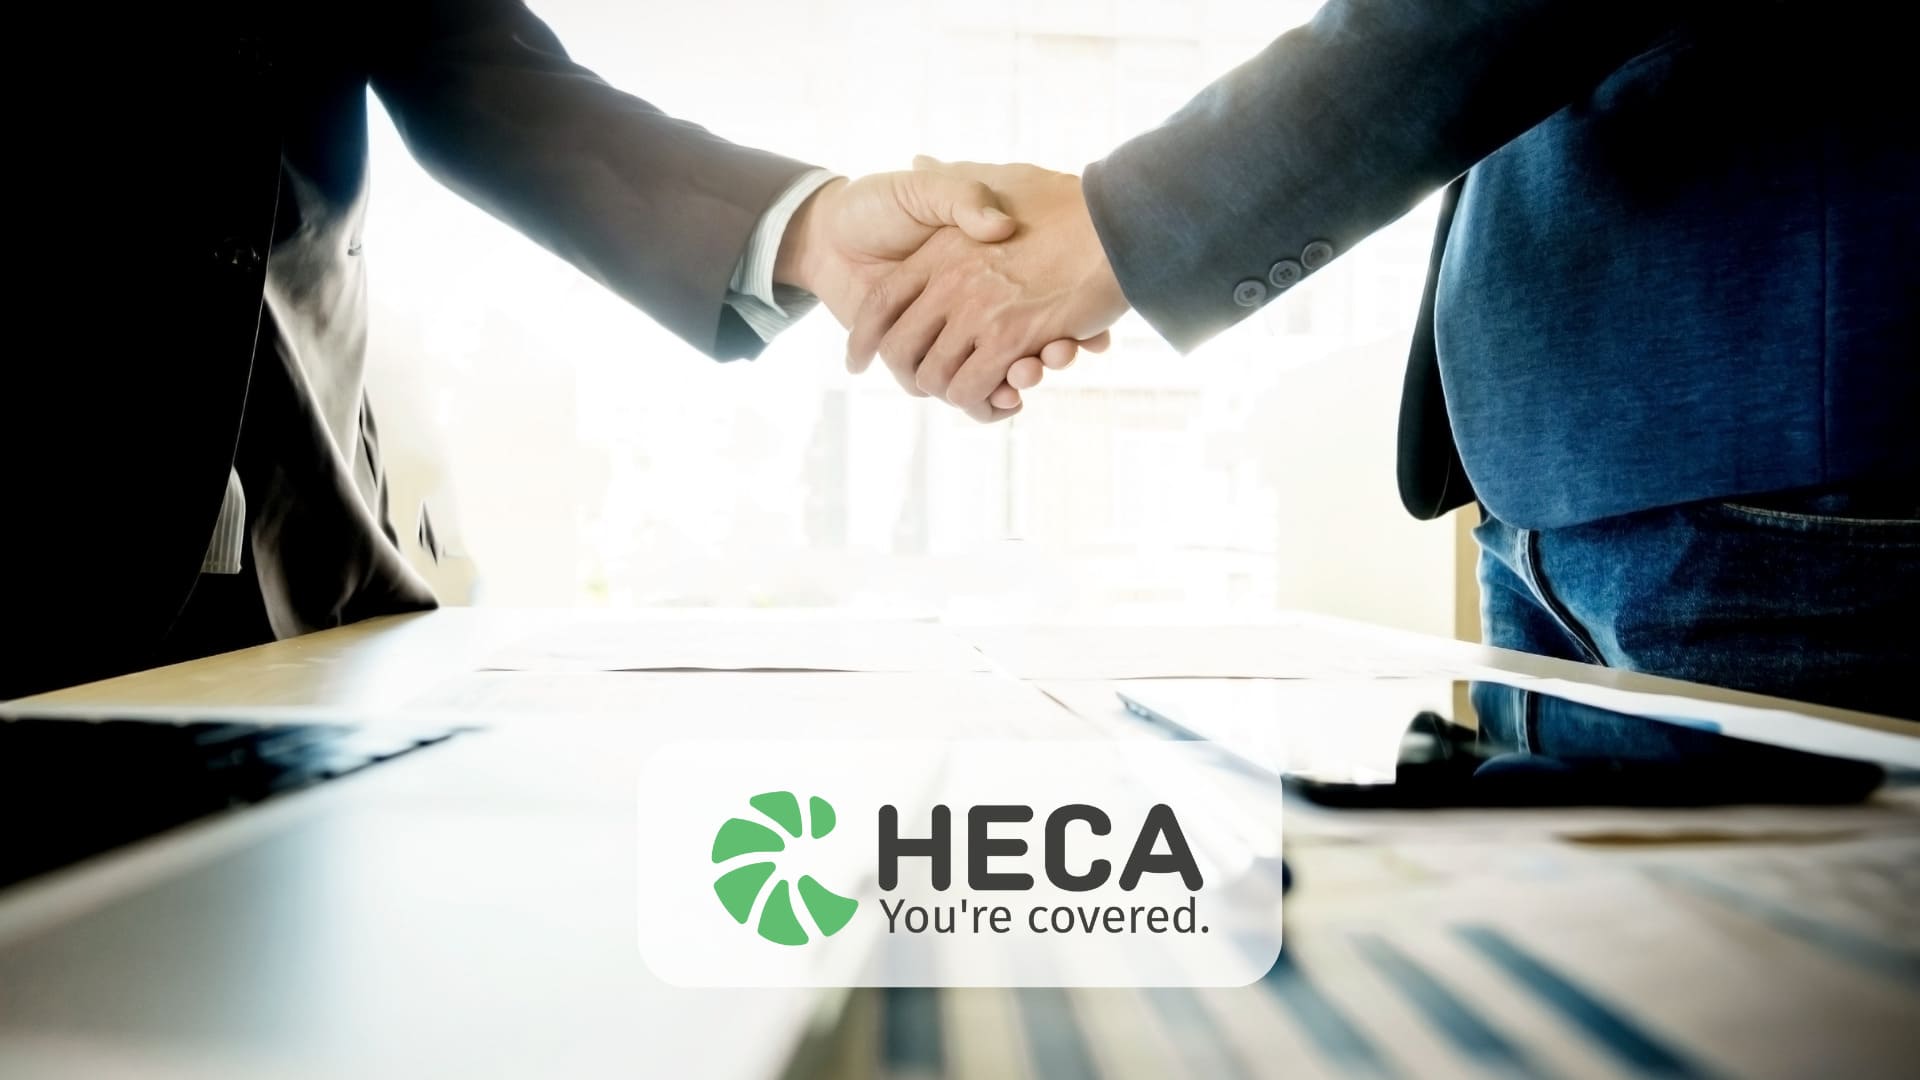 Heca espande i suoi servizi con fideiussioni e blockchain per le assicurazioni